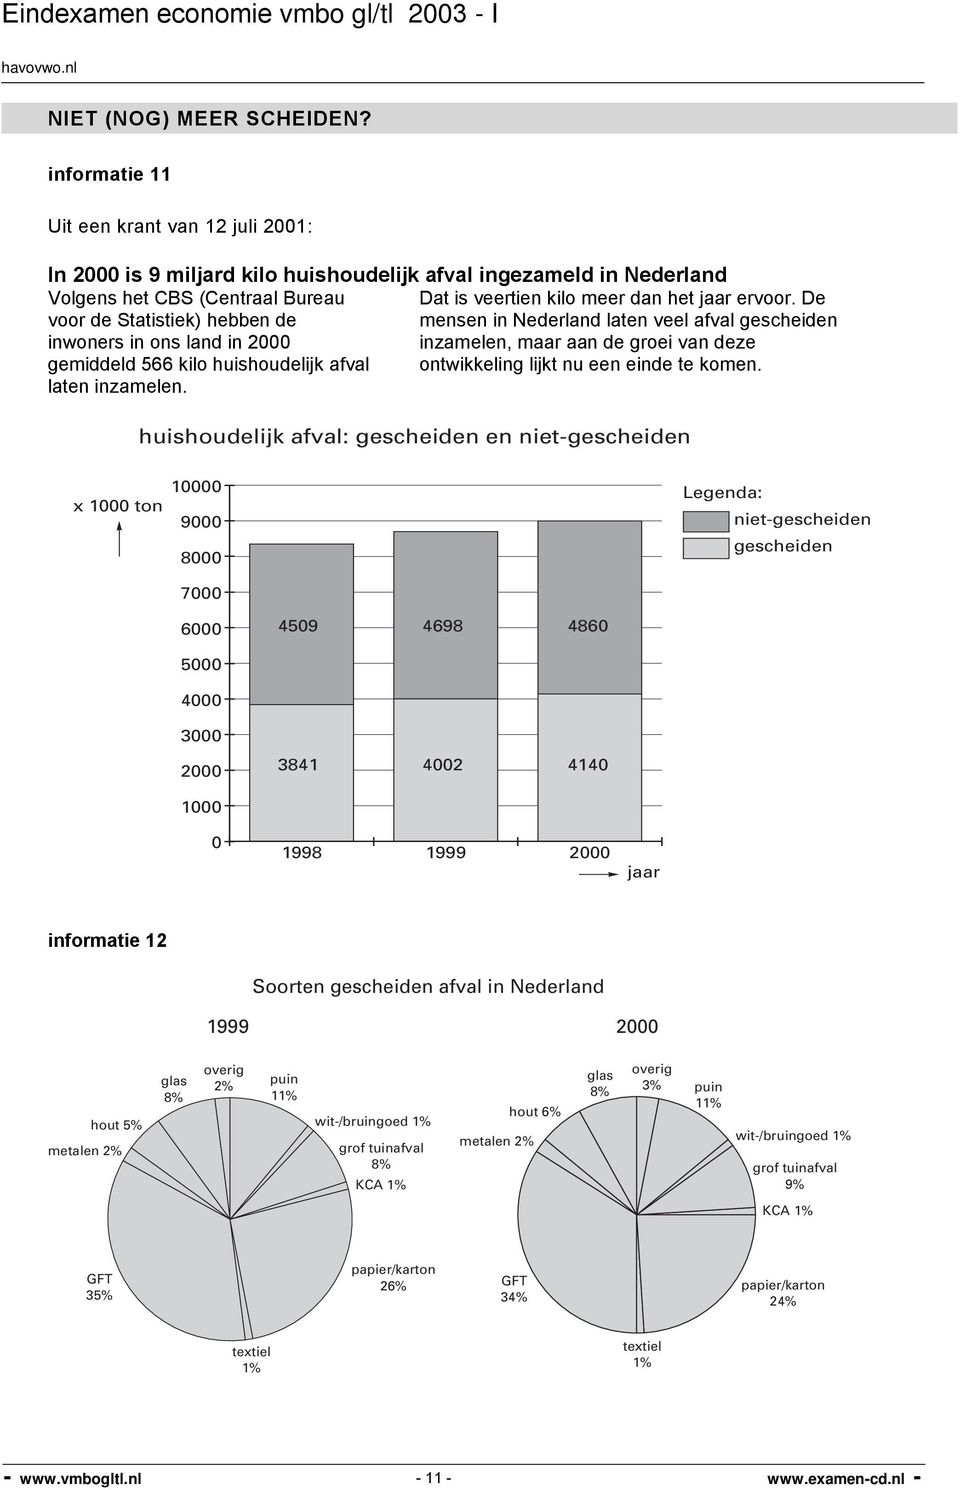 De voor de Statistiek) hebben de mensen in Nederland laten veel afval gescheiden inwoners in ons land in 2000 inzamelen, maar aan de groei van deze gemiddeld 566 kilo huishoudelijk afval ontwikkeling